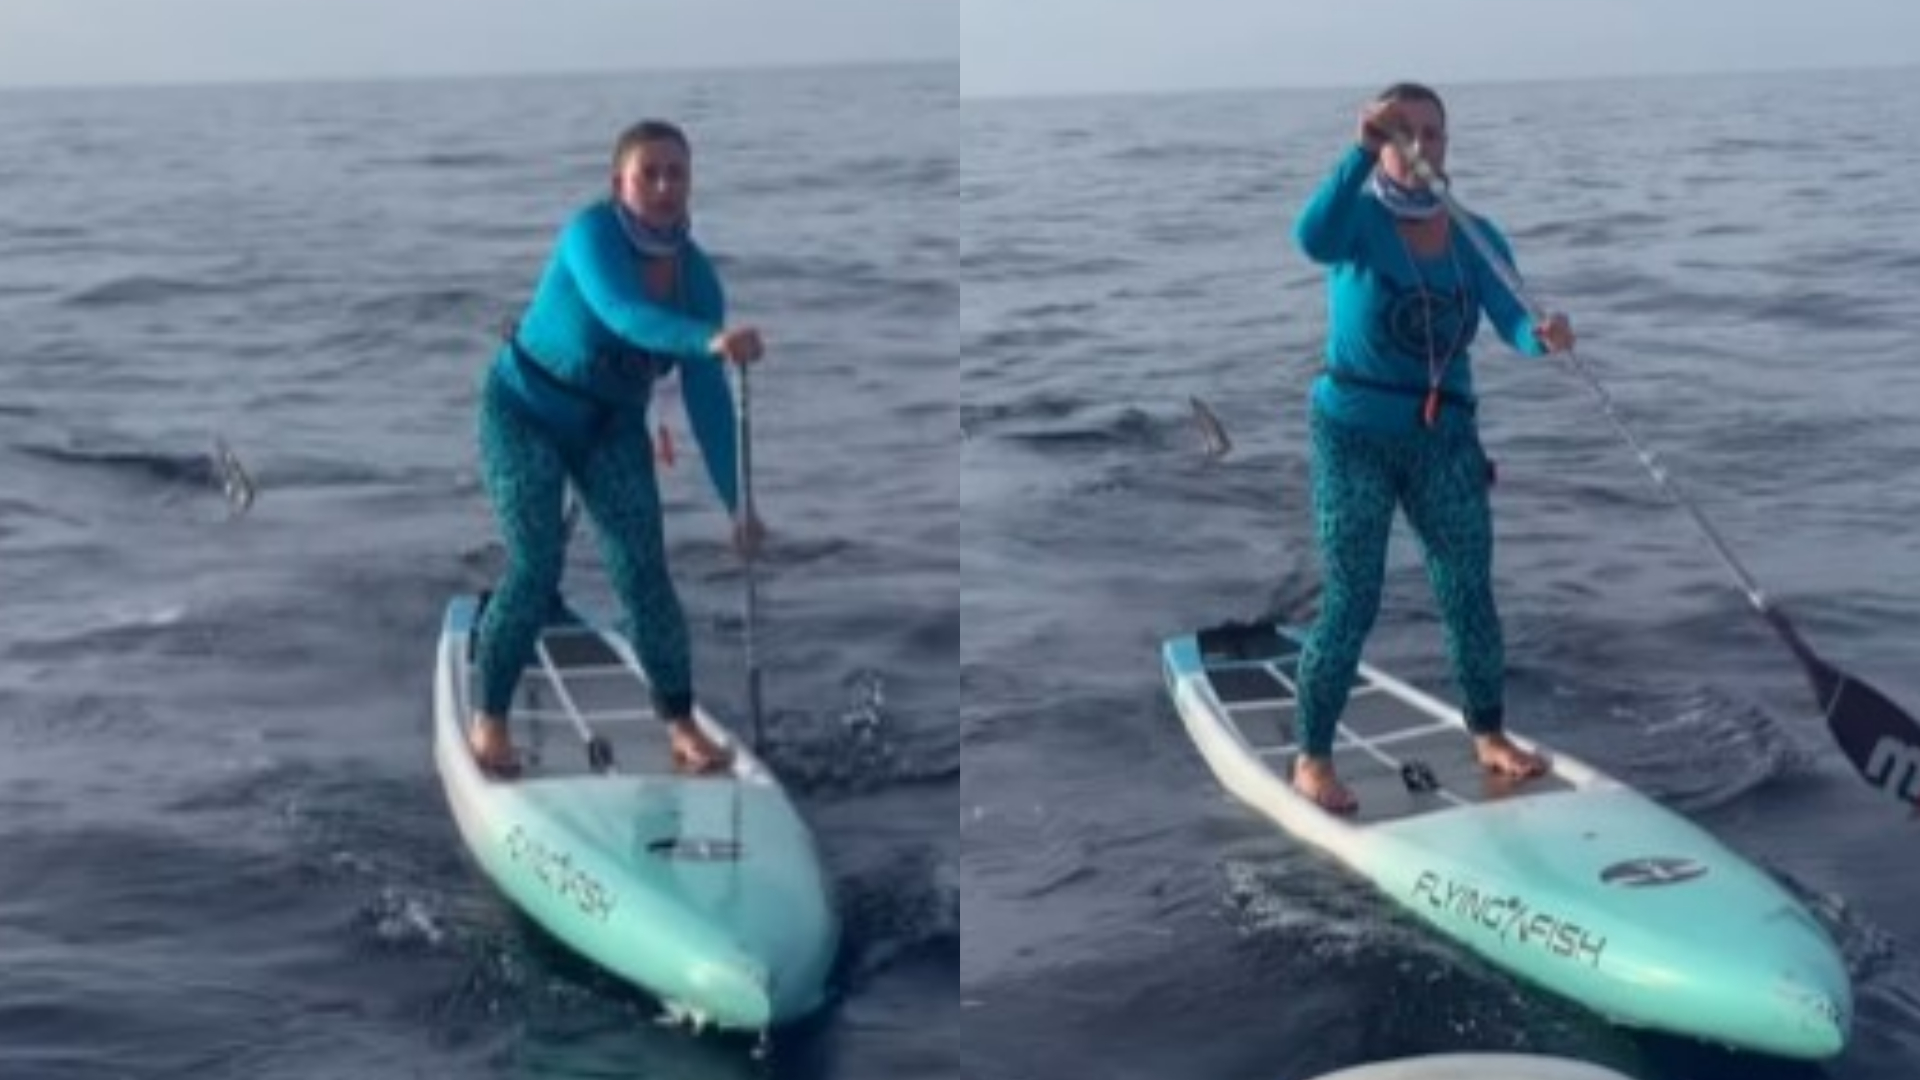 Mulher é cercada por tubarão enquanto praticava stand-up paddle, e reação surpreende; assista